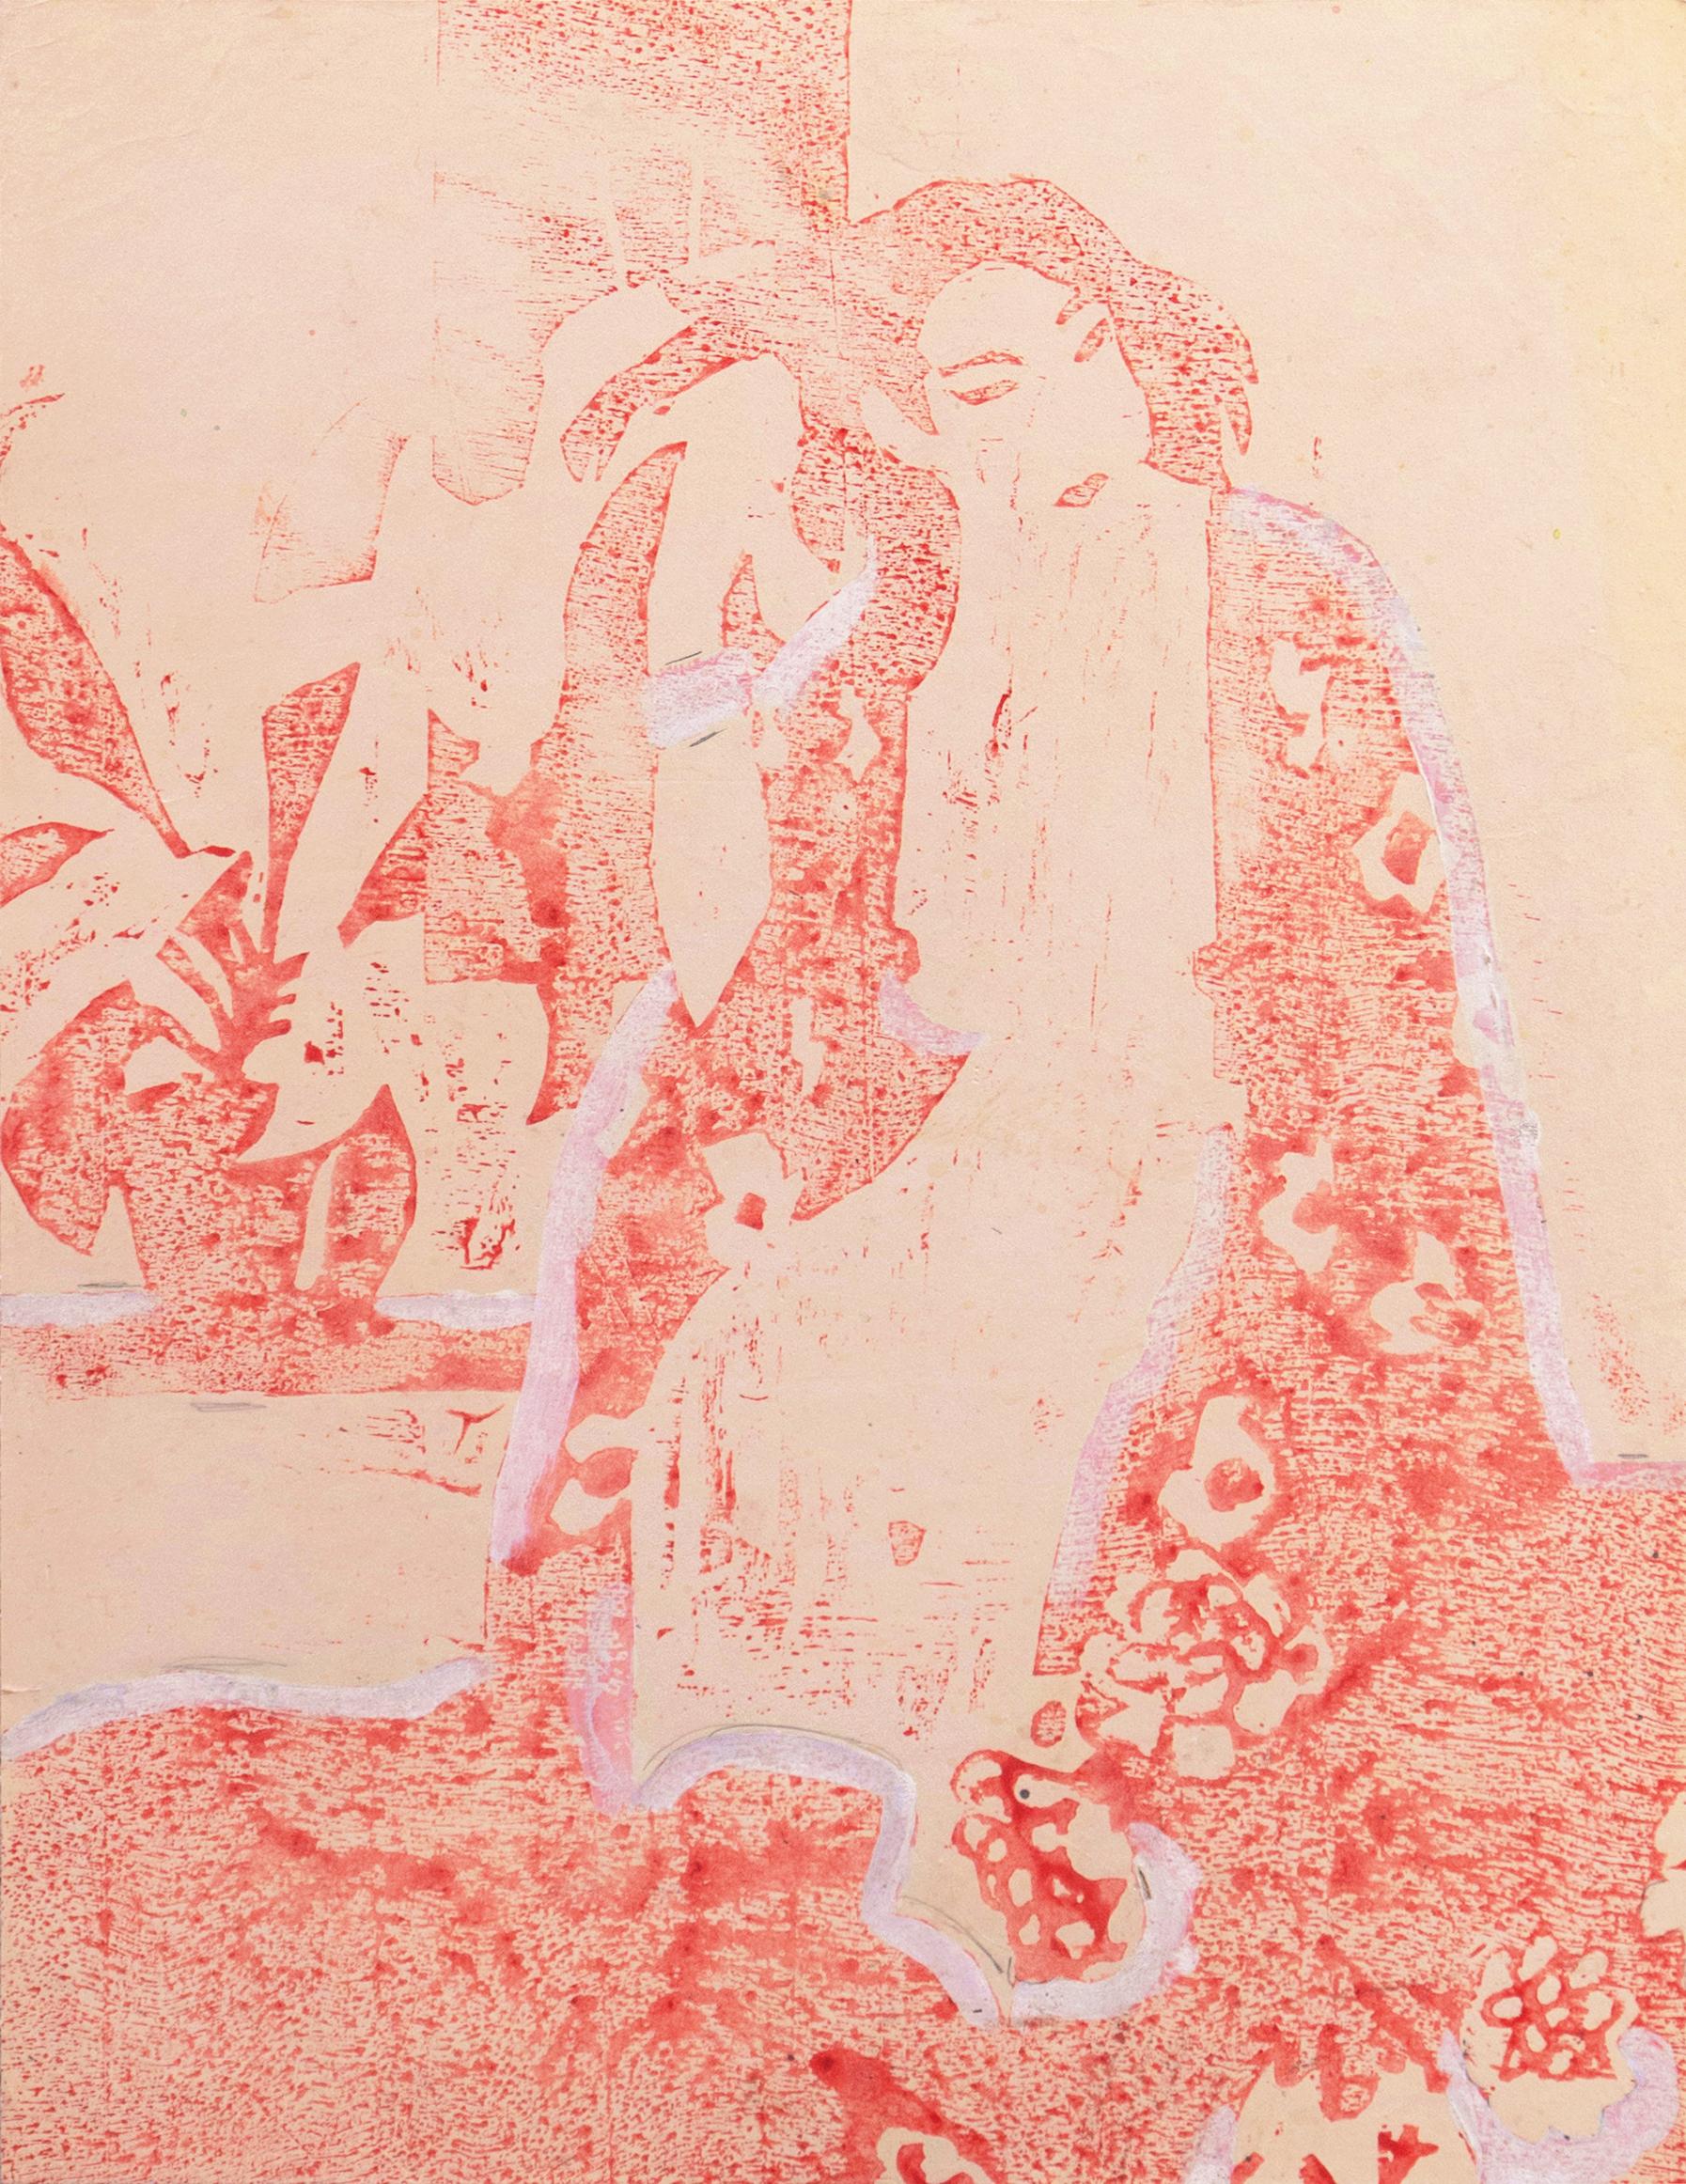 Femme en kimono", Paris, Louvre, Salon d'Automne, Académie Chaumière, LACMA